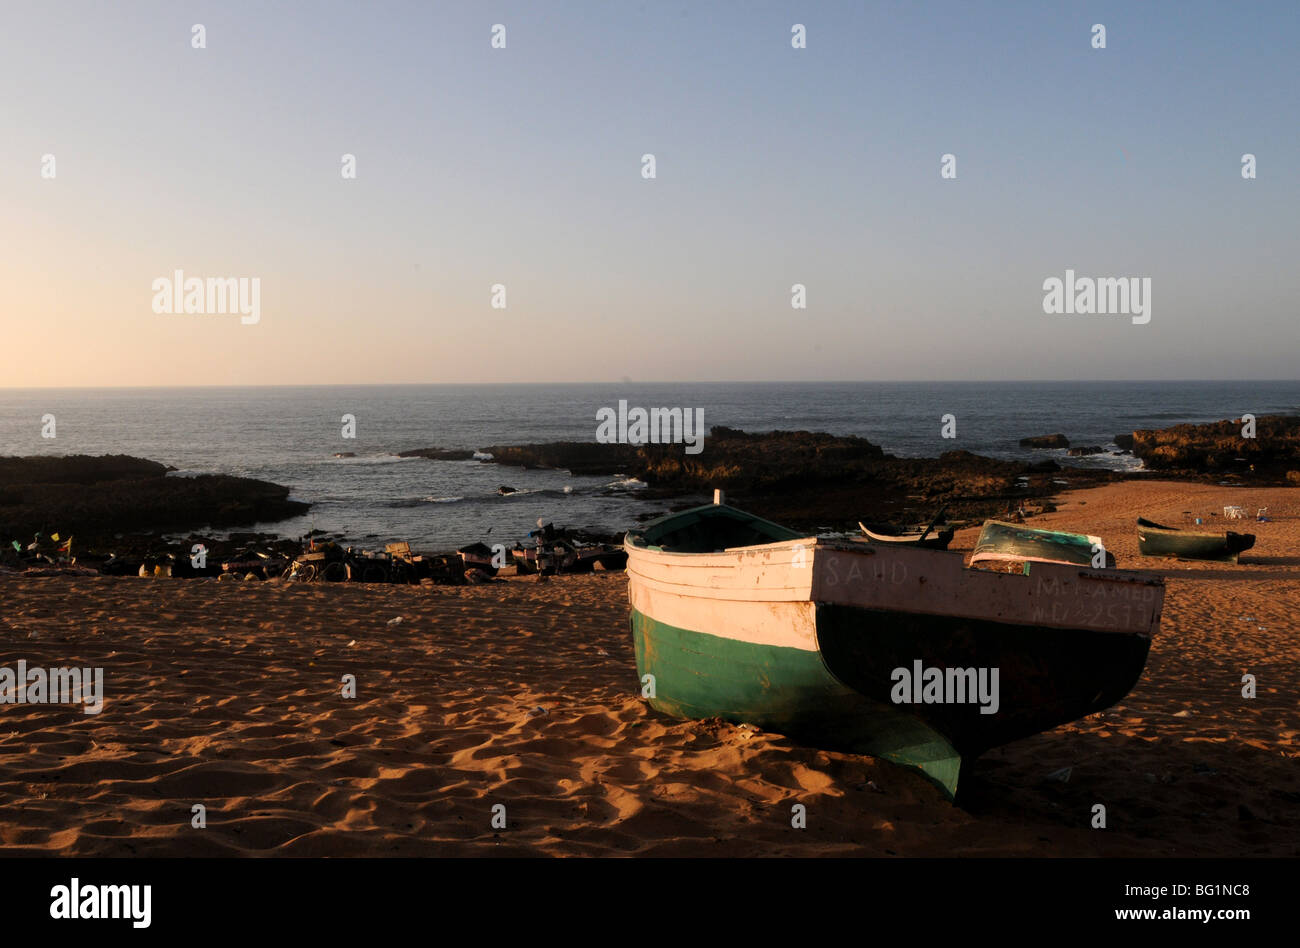 Bateaux de pêche sur la plage, Oualidia, Maroc Banque D'Images